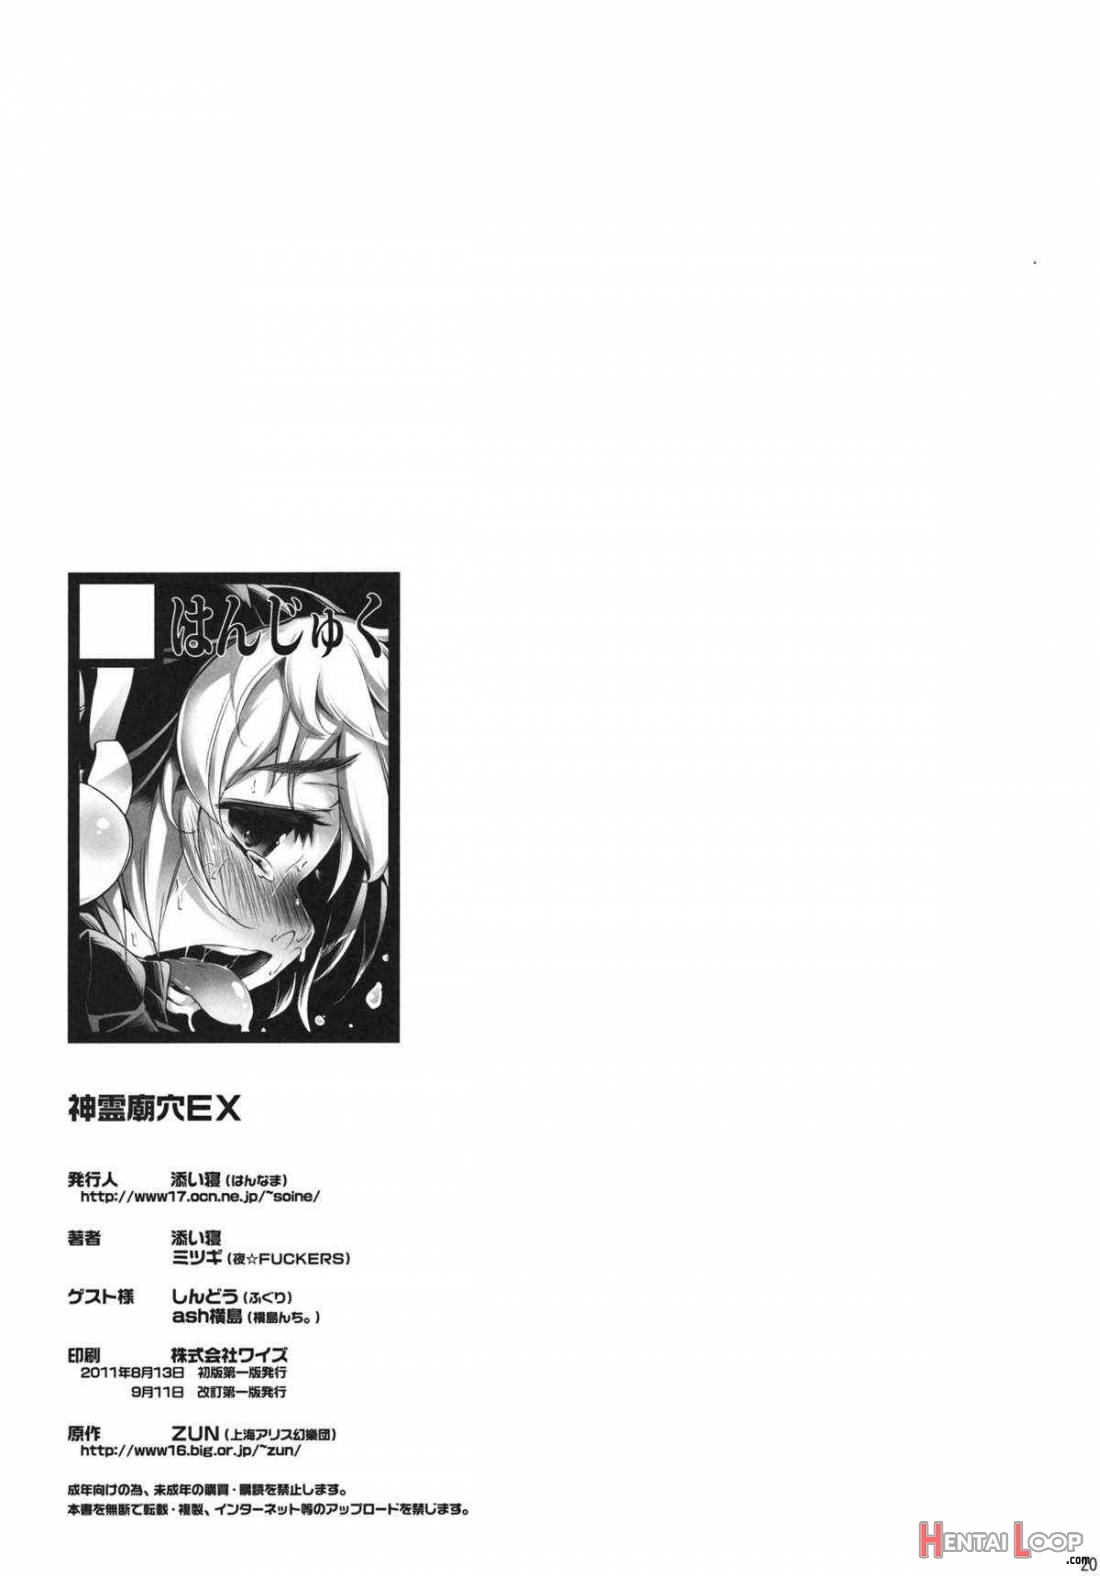 Shinreibyou Ana Ex page 10